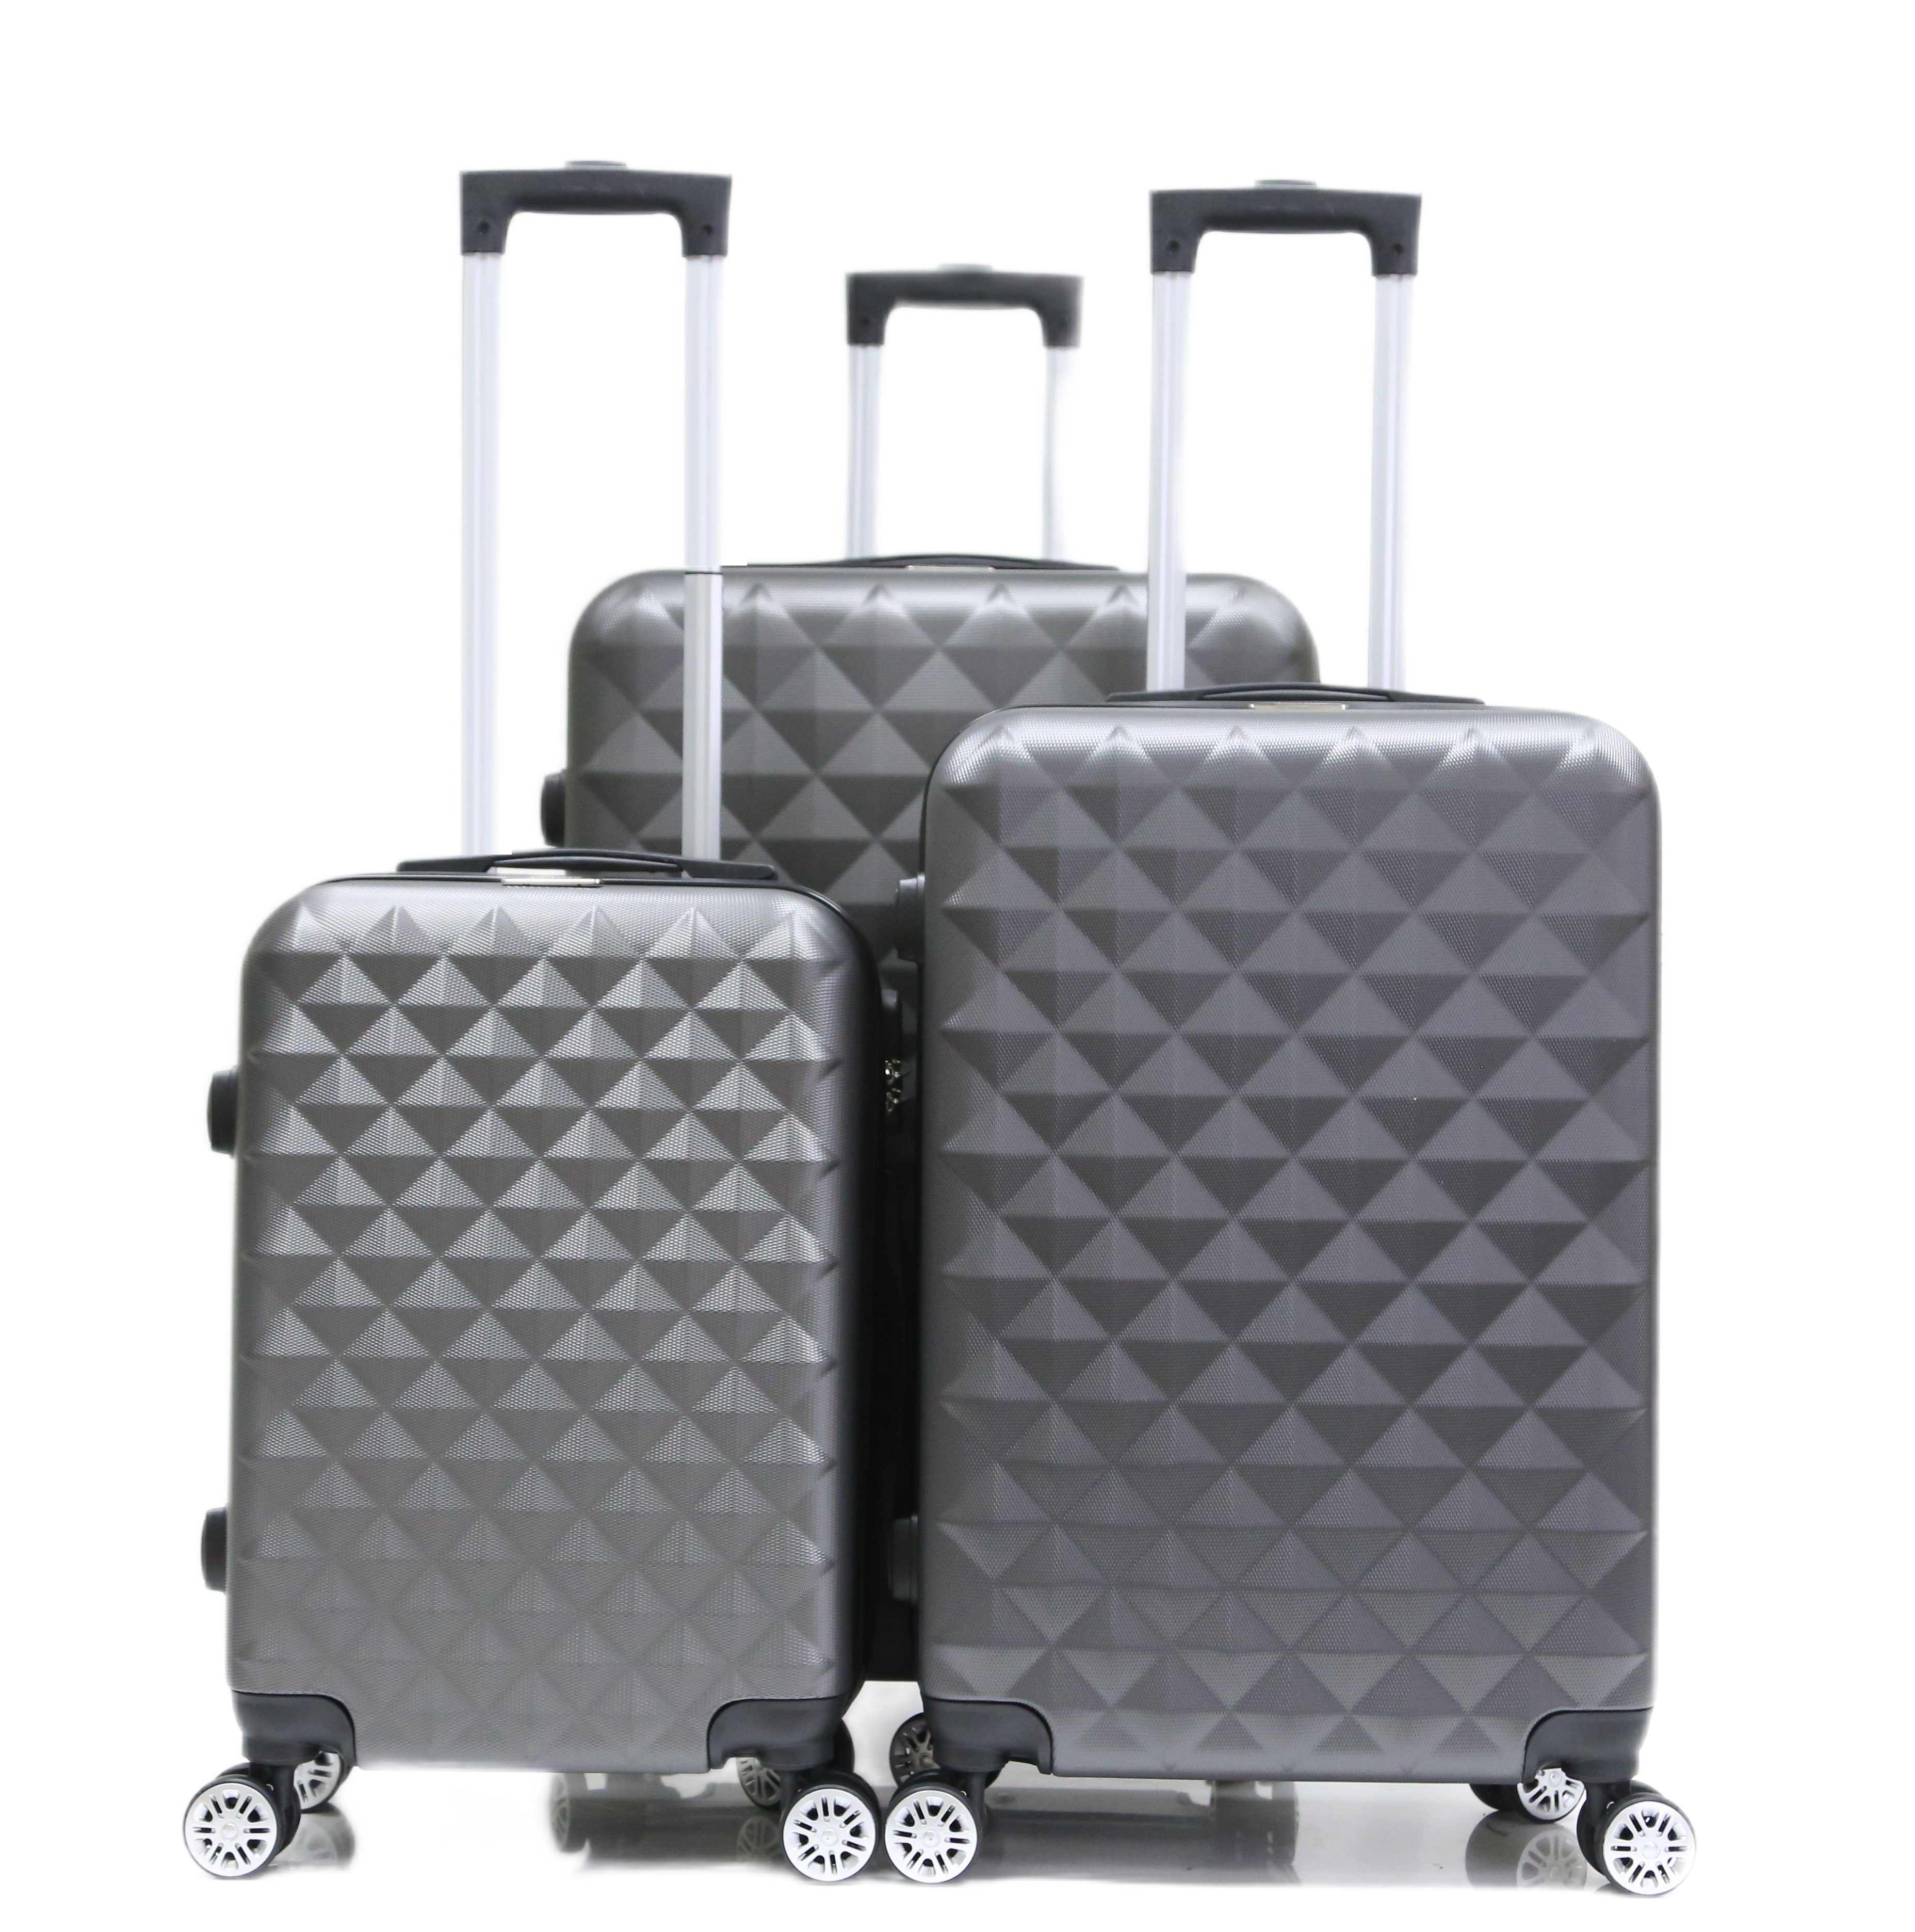 Cheffinger Koffer Koffer 3 tlg Hartschale Trolley Set Kofferset Handgepäck ABS-07, 4 Rollen Silber